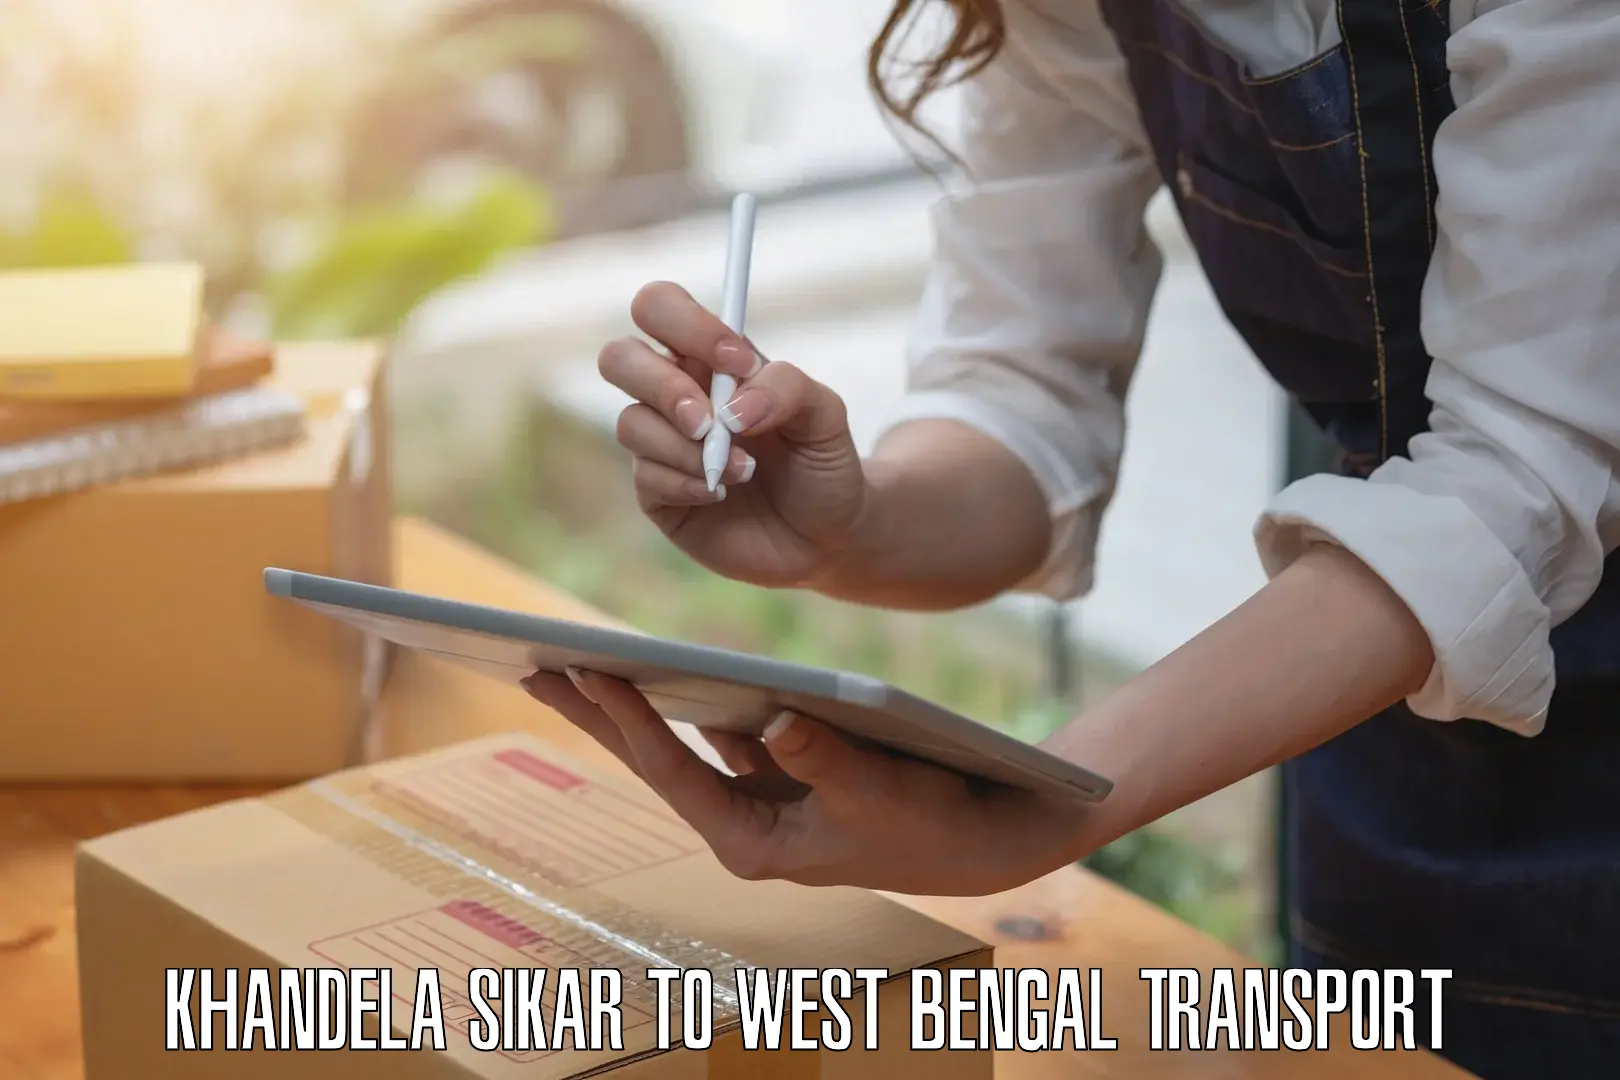 Transport shared services Khandela Sikar to West Bengal